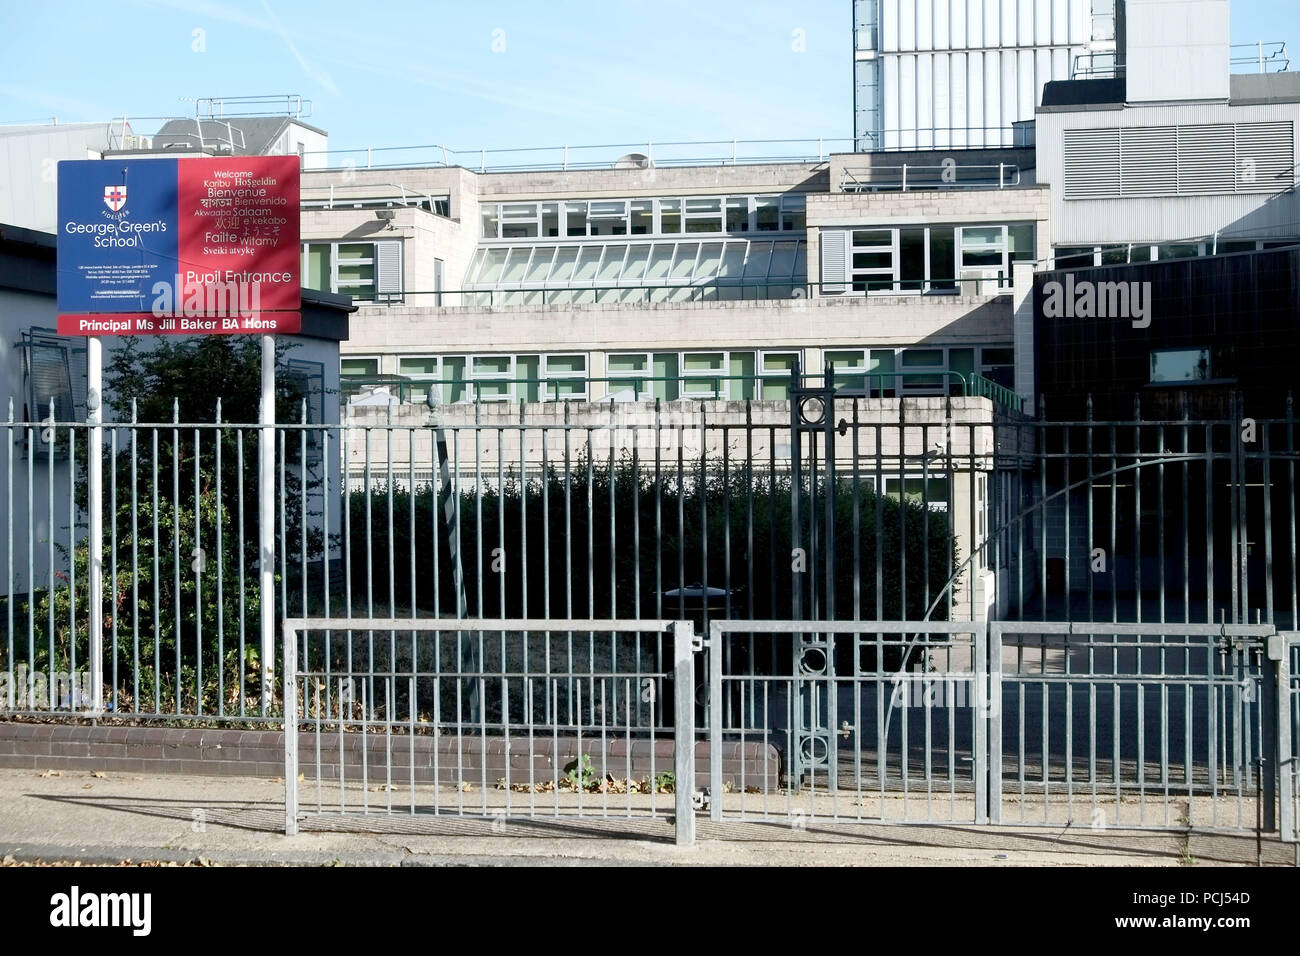 George verde della scuola è un coeducational scuola secondaria e la sesta forma, situato nella città di Cubitt, sull'Isola di cani nel quartiere londinese di torre H Foto Stock